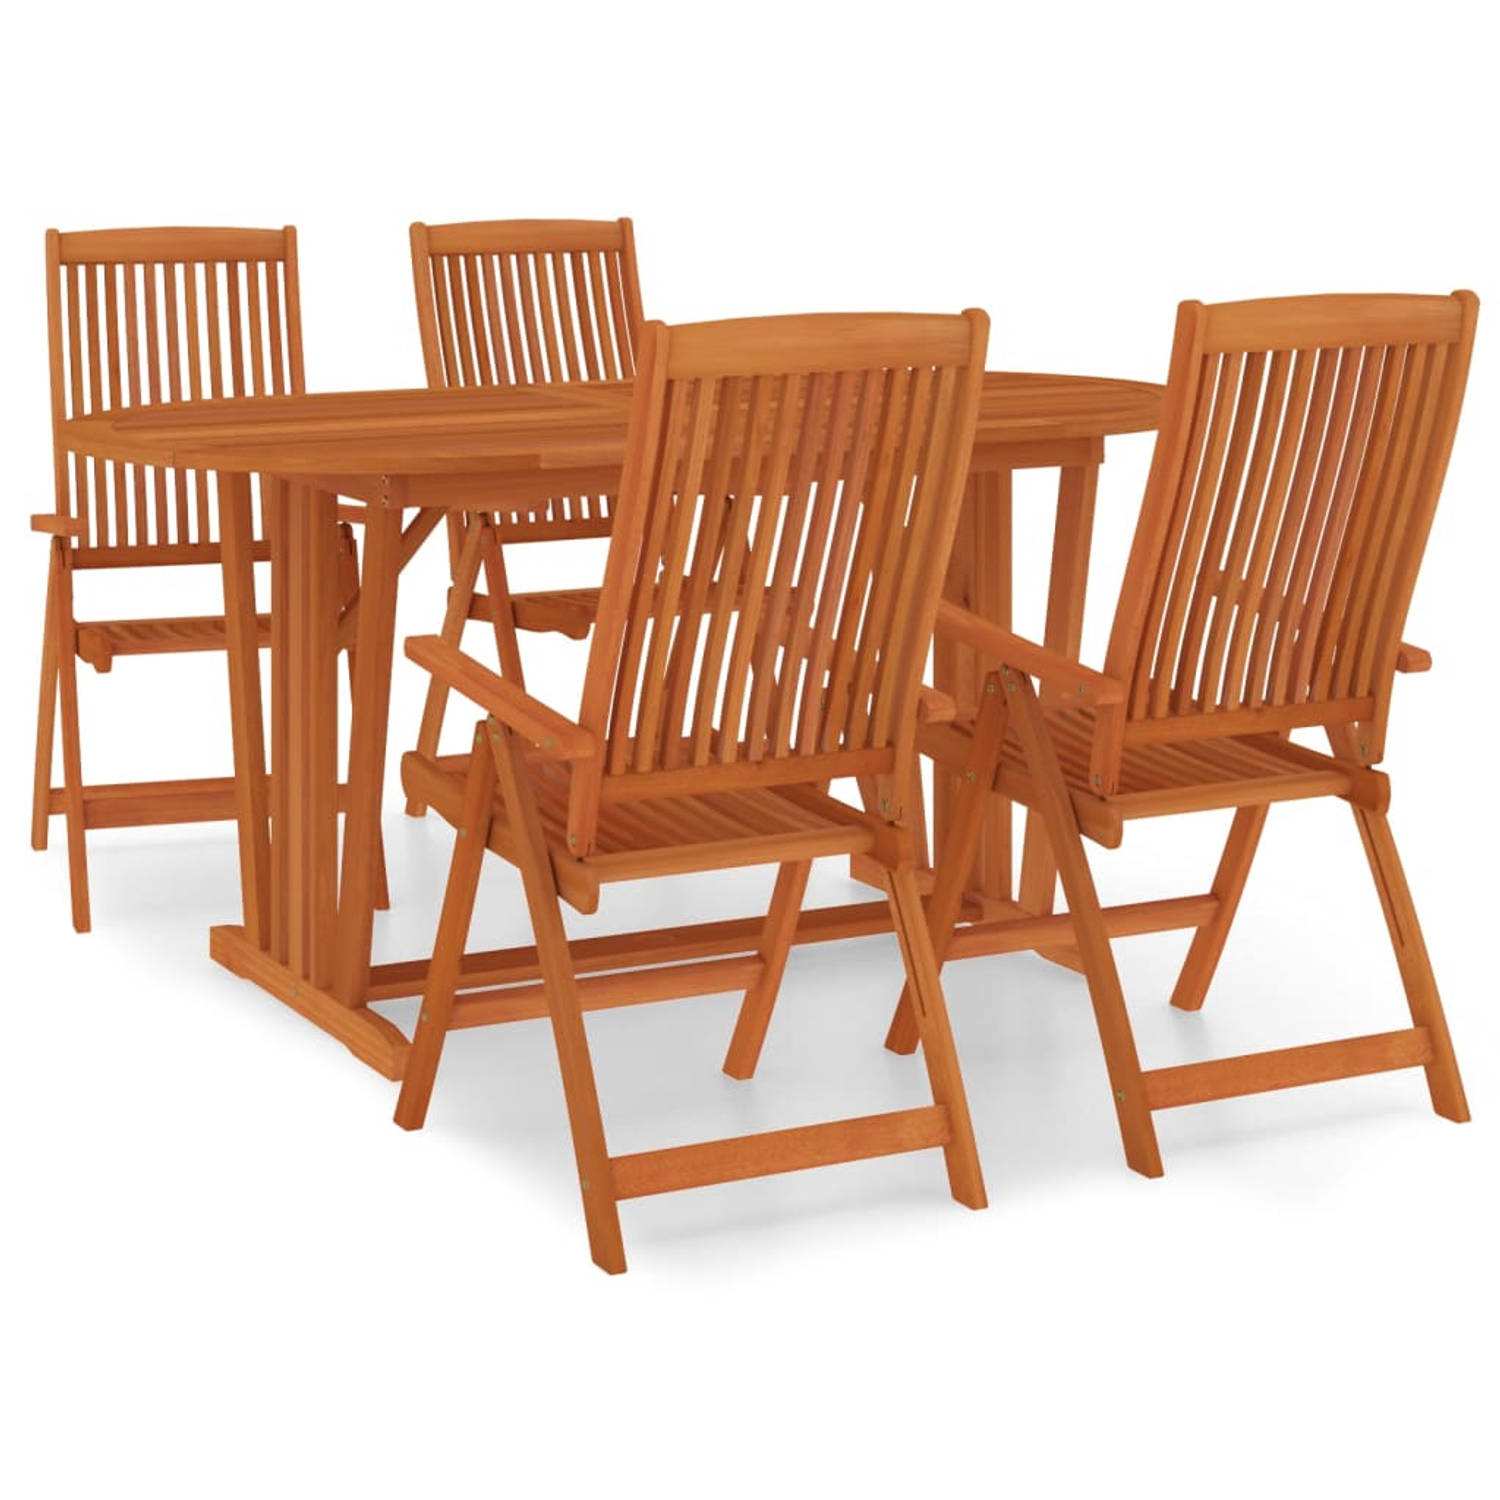 The Living Store Houten Tuinset - Eucalyptushout - 160x85x75 cm - Verstelbare stoelen